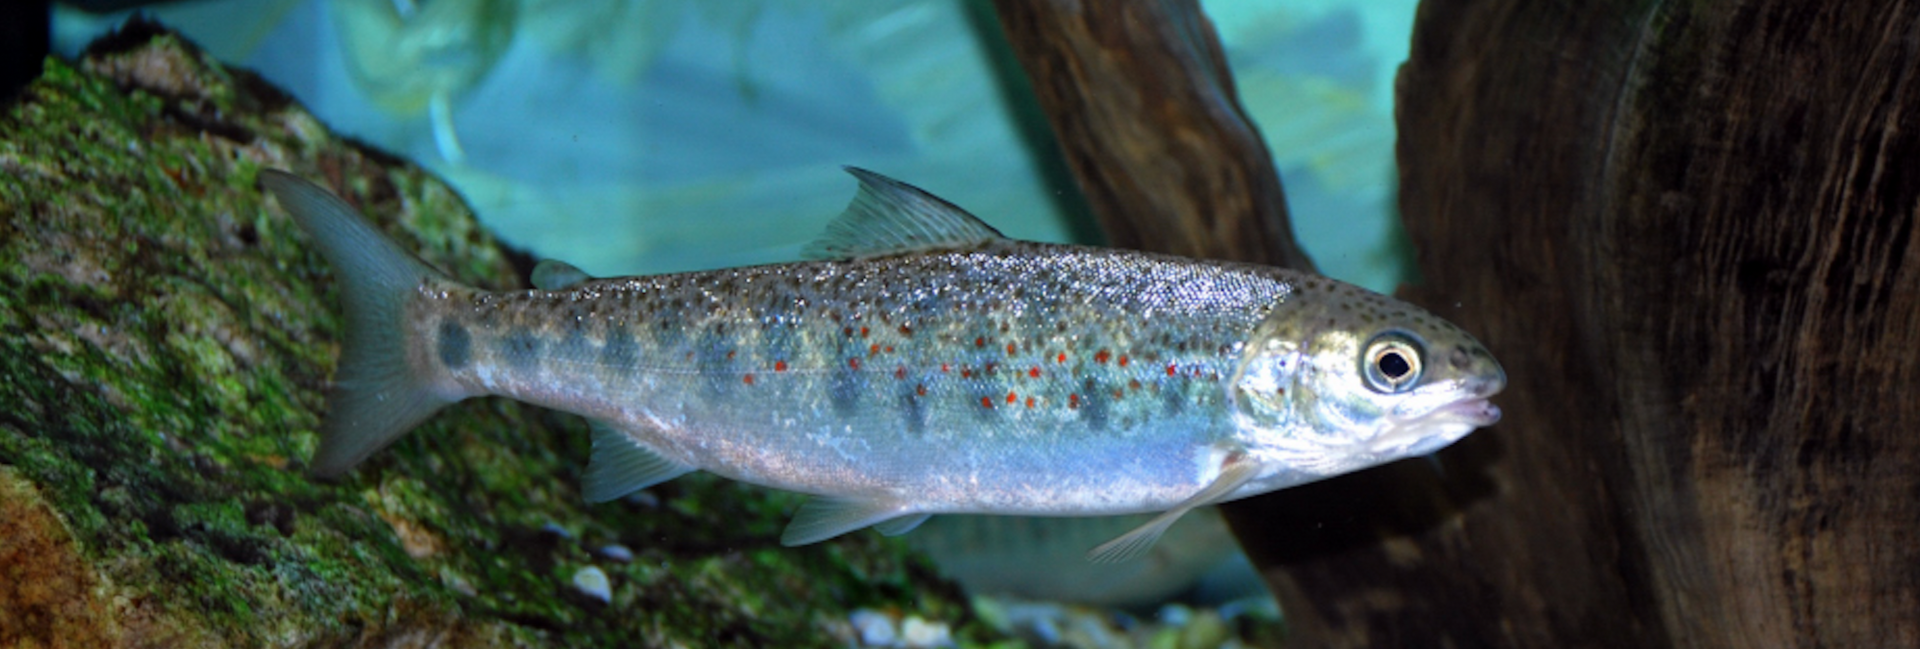 A silvery juvenile salmon